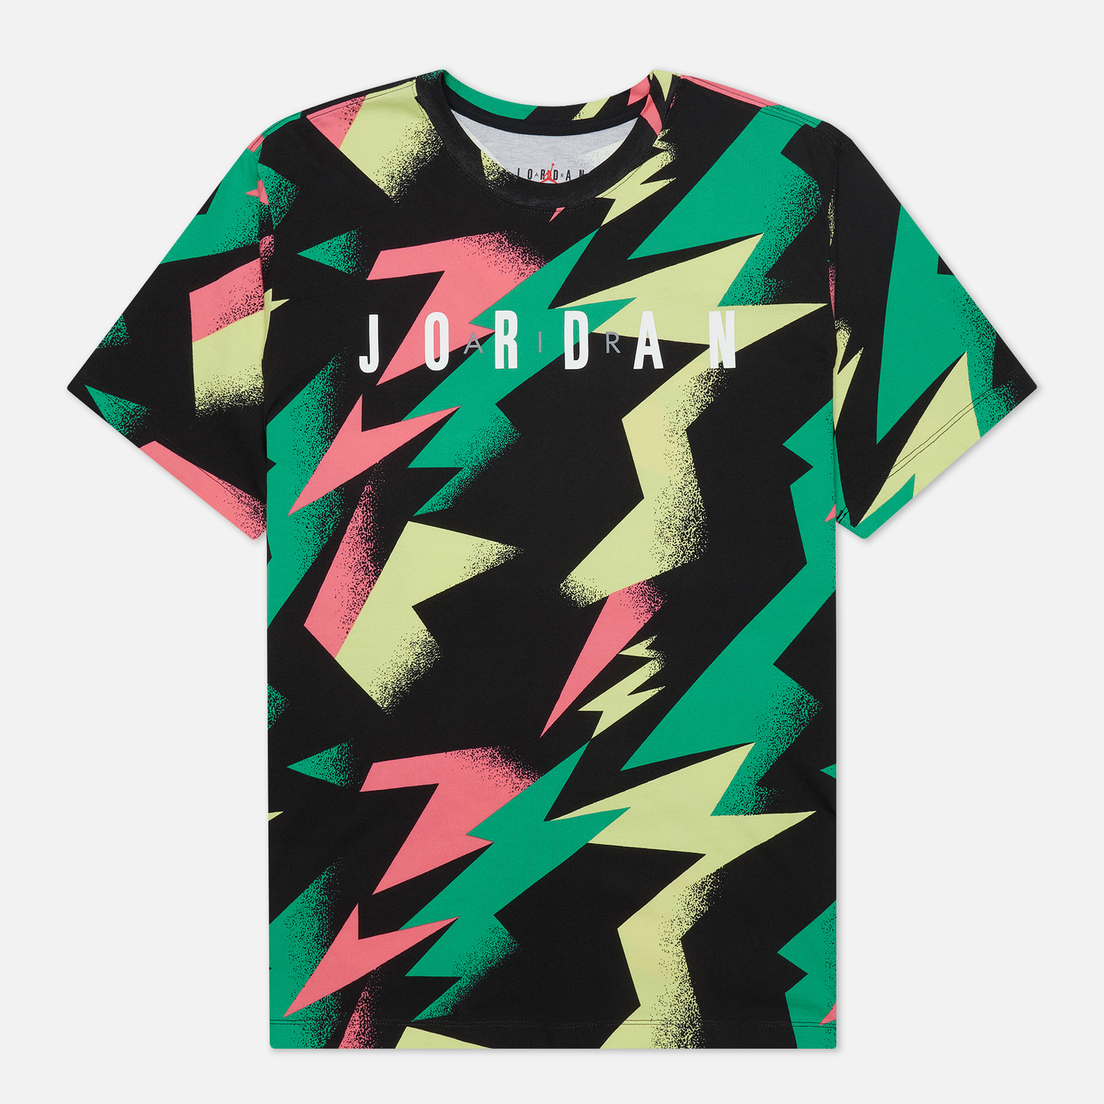 Jordan Мужская футболка Jumpman Air All Over Print